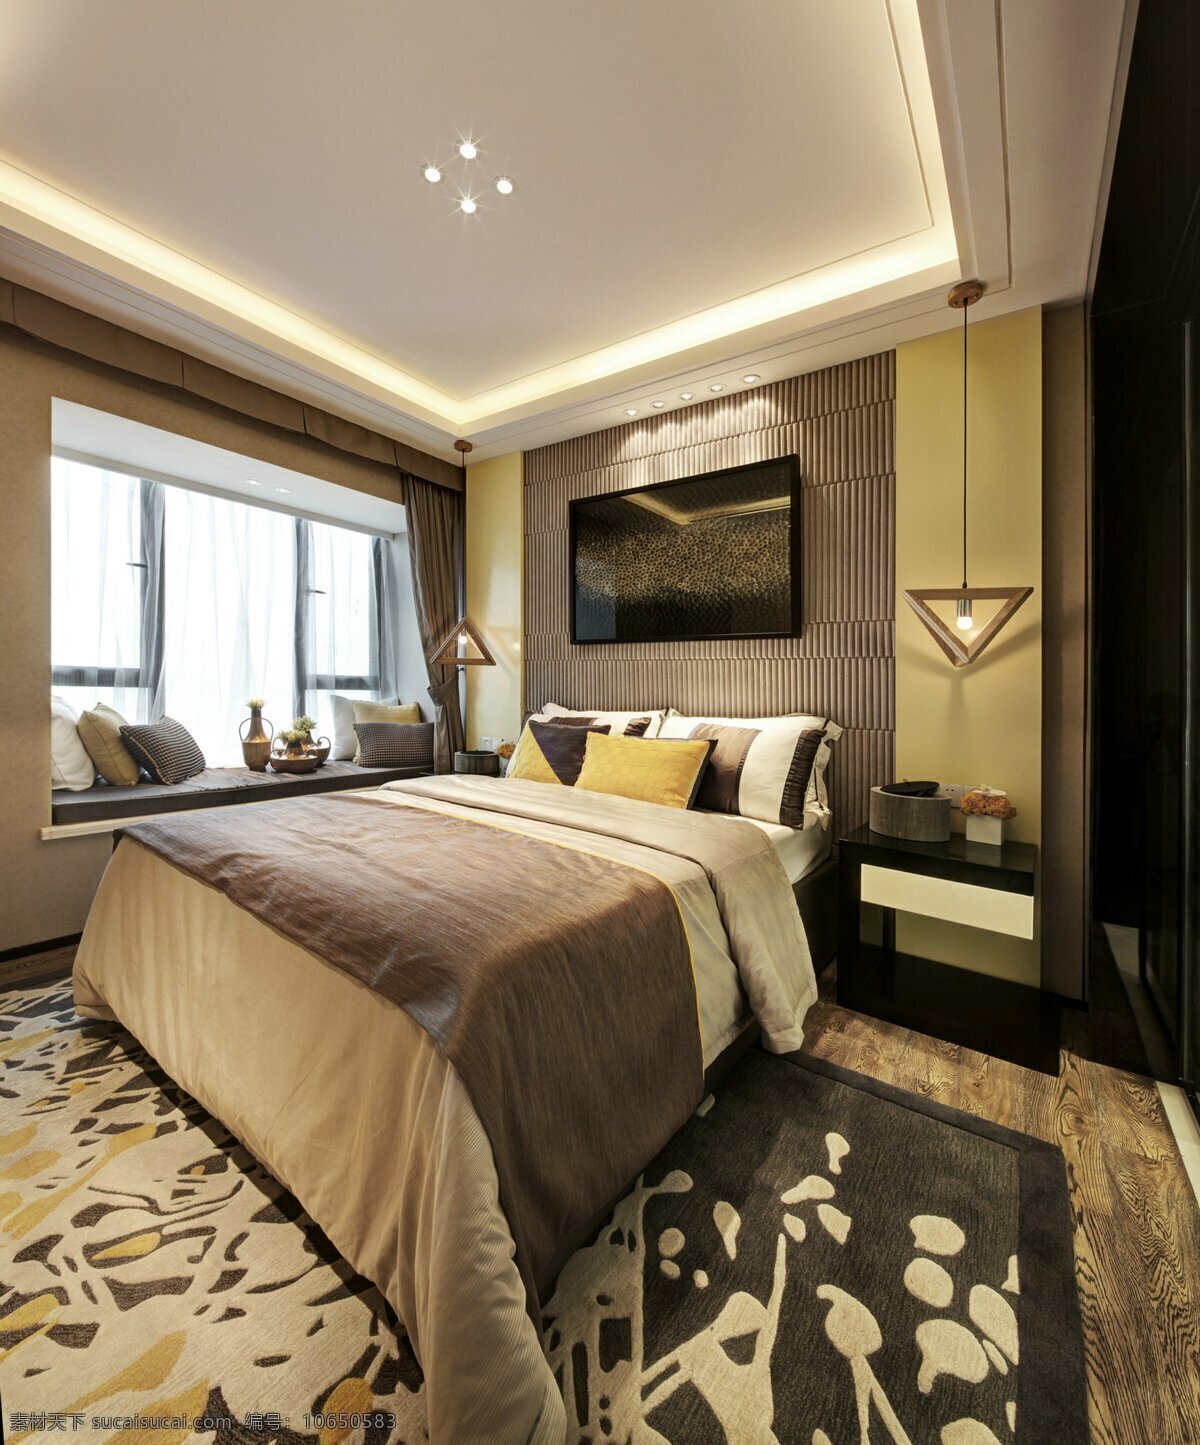 现代 时尚 卧室 木地板 室内装修 效果图 双人床 客厅装修 大飘窗